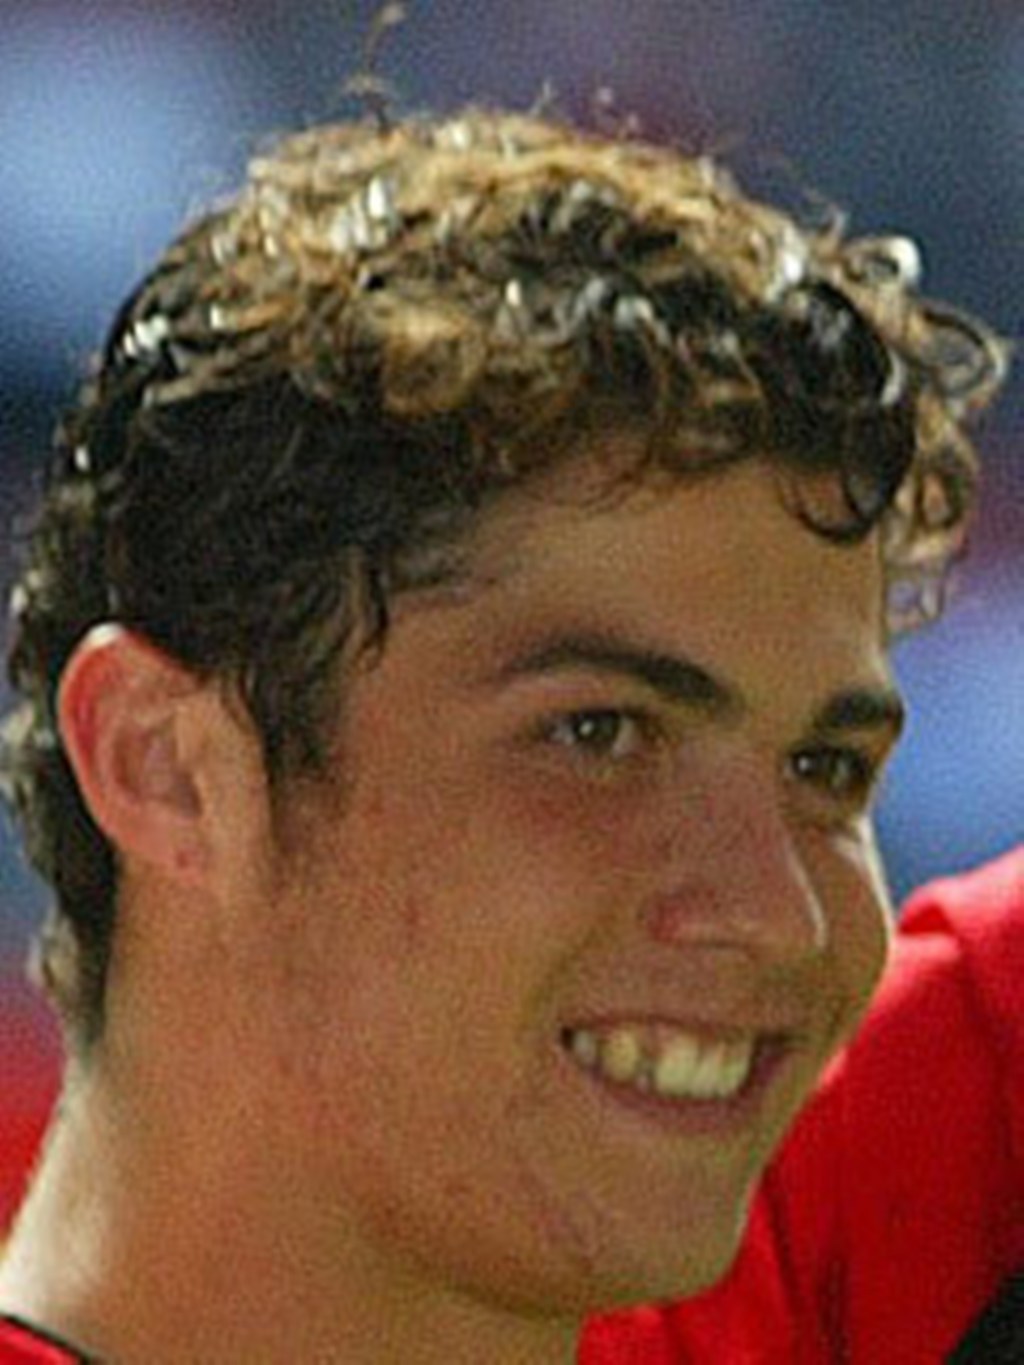 http://images4.fanpop.com/image/photos/16600000/Ronaldo-with-wavy-hair-cristiano-ronaldo-16690556-1024-1365.jpg